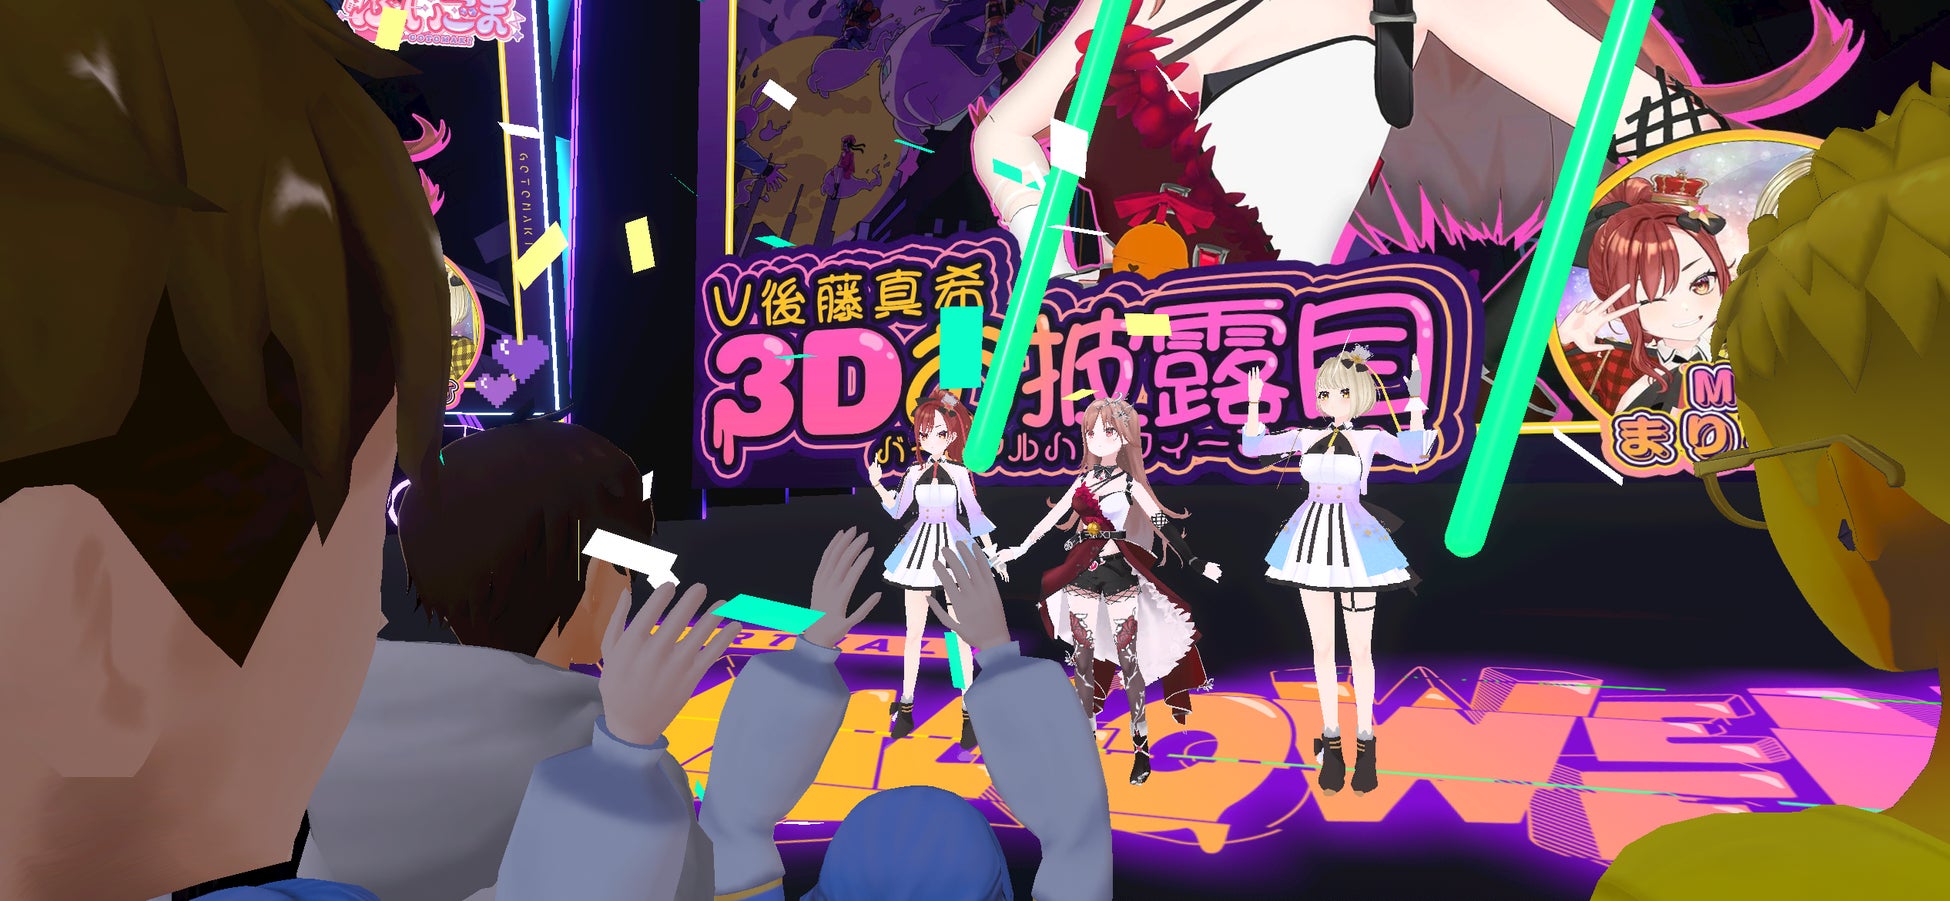 ぶいごま（V後藤真希）がバーチャル渋谷に降臨！3D姿を初公開！人気曲「LOVEマシーン」をVTuber姿で初披露「VTuberって夢が広がるね！」と大興奮